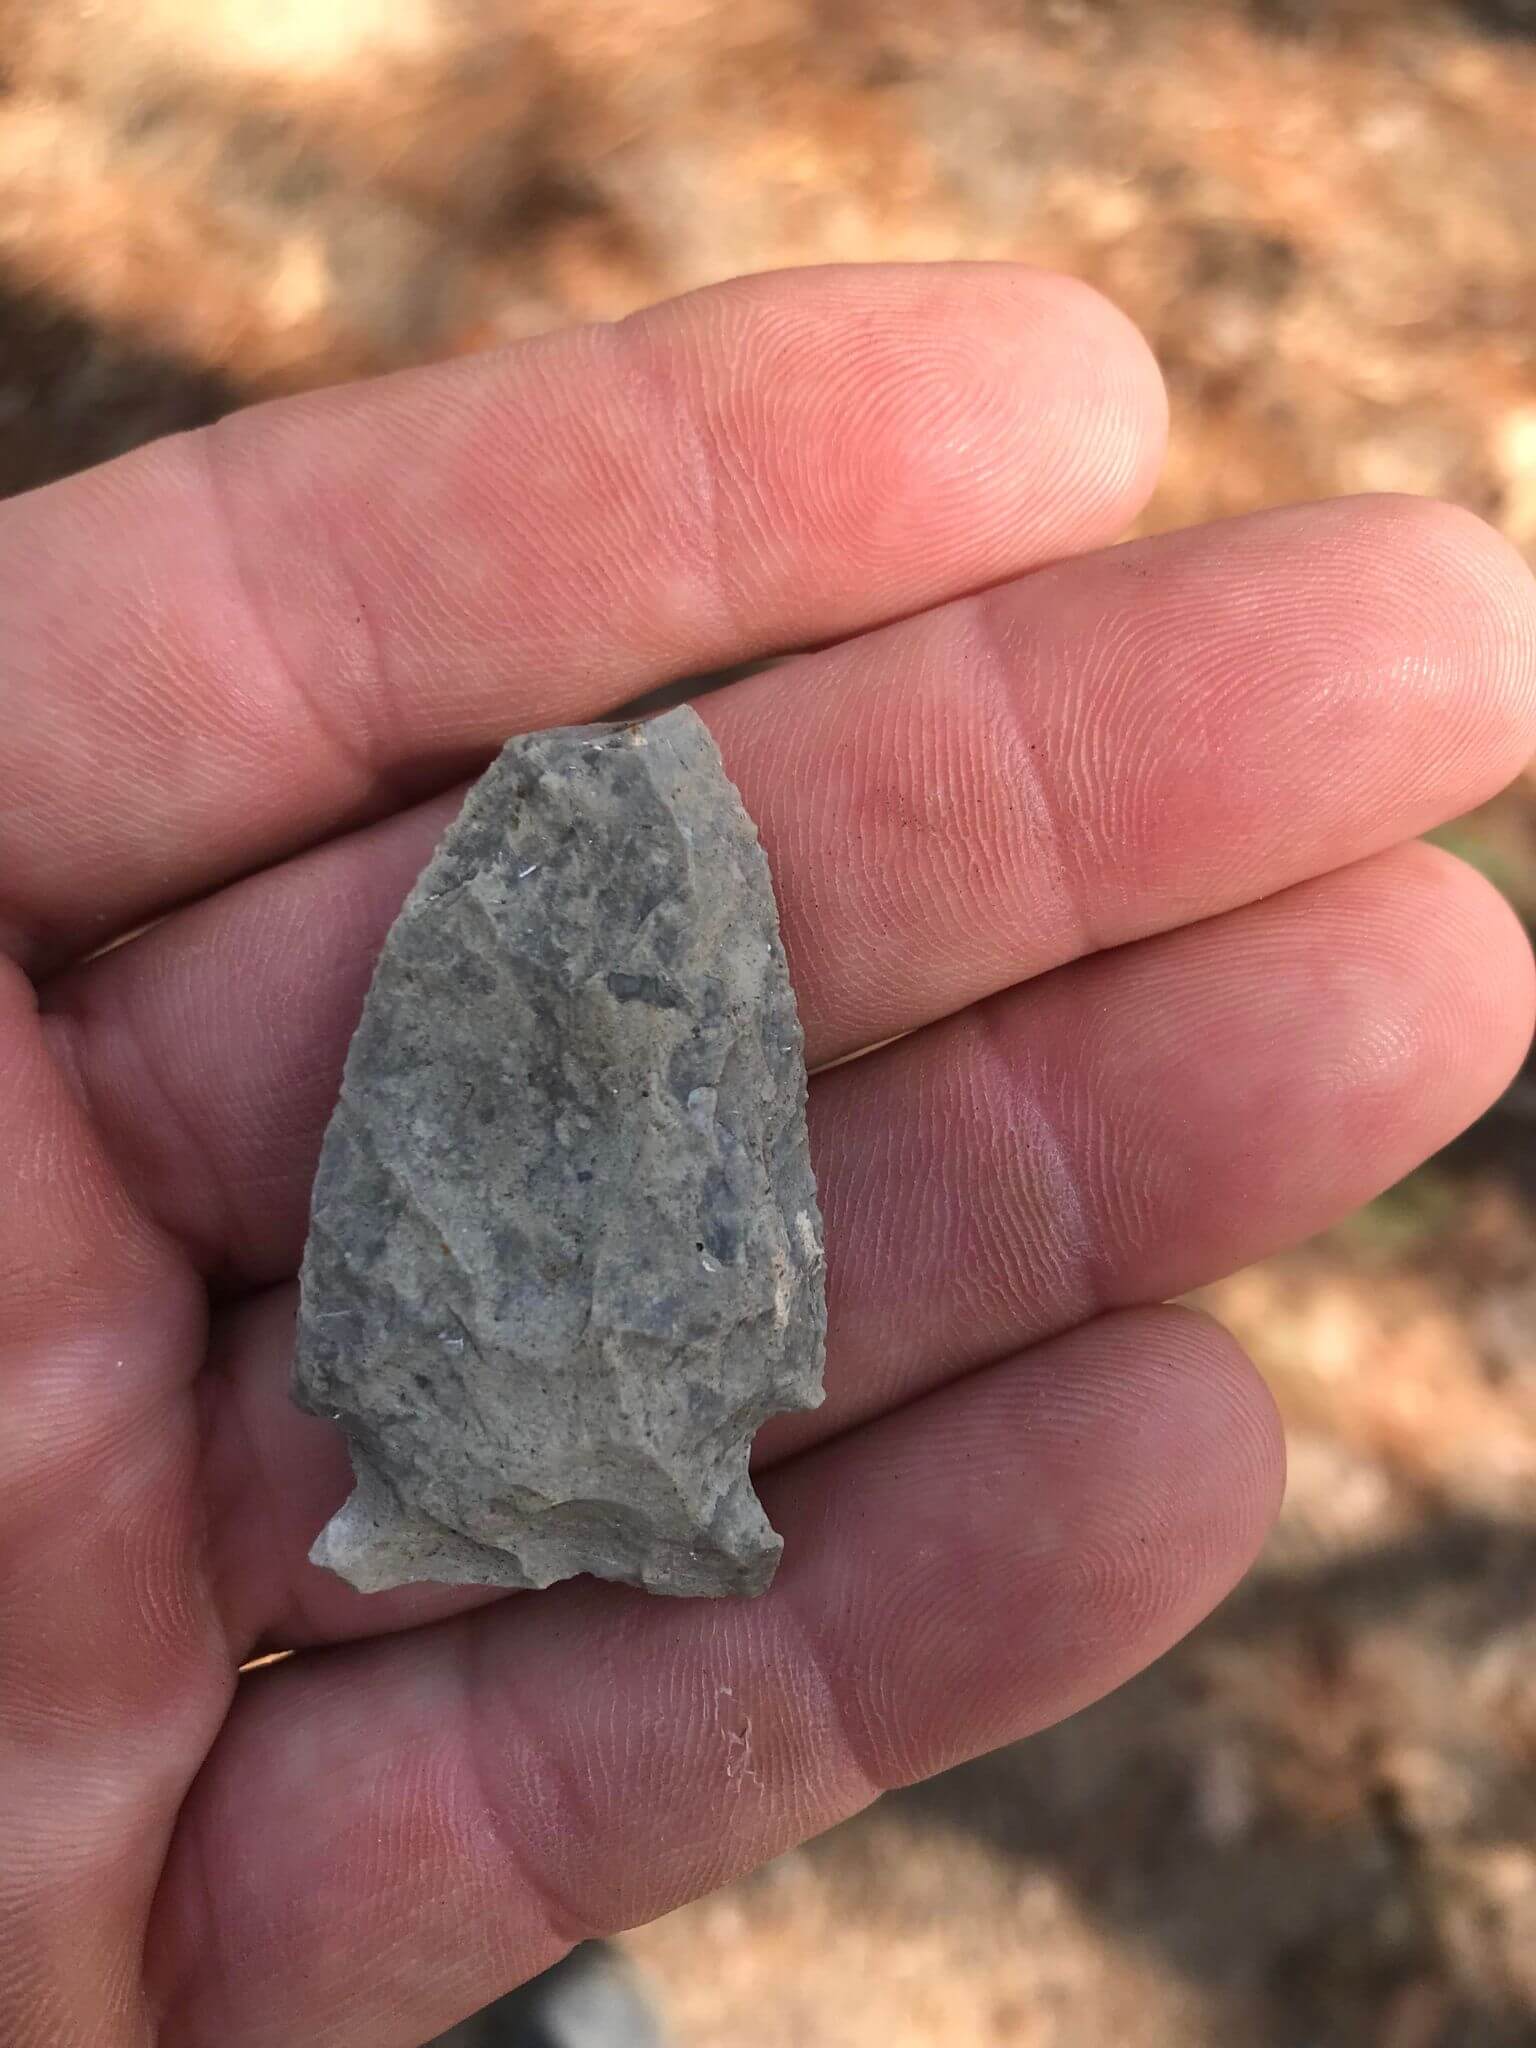 A found rock